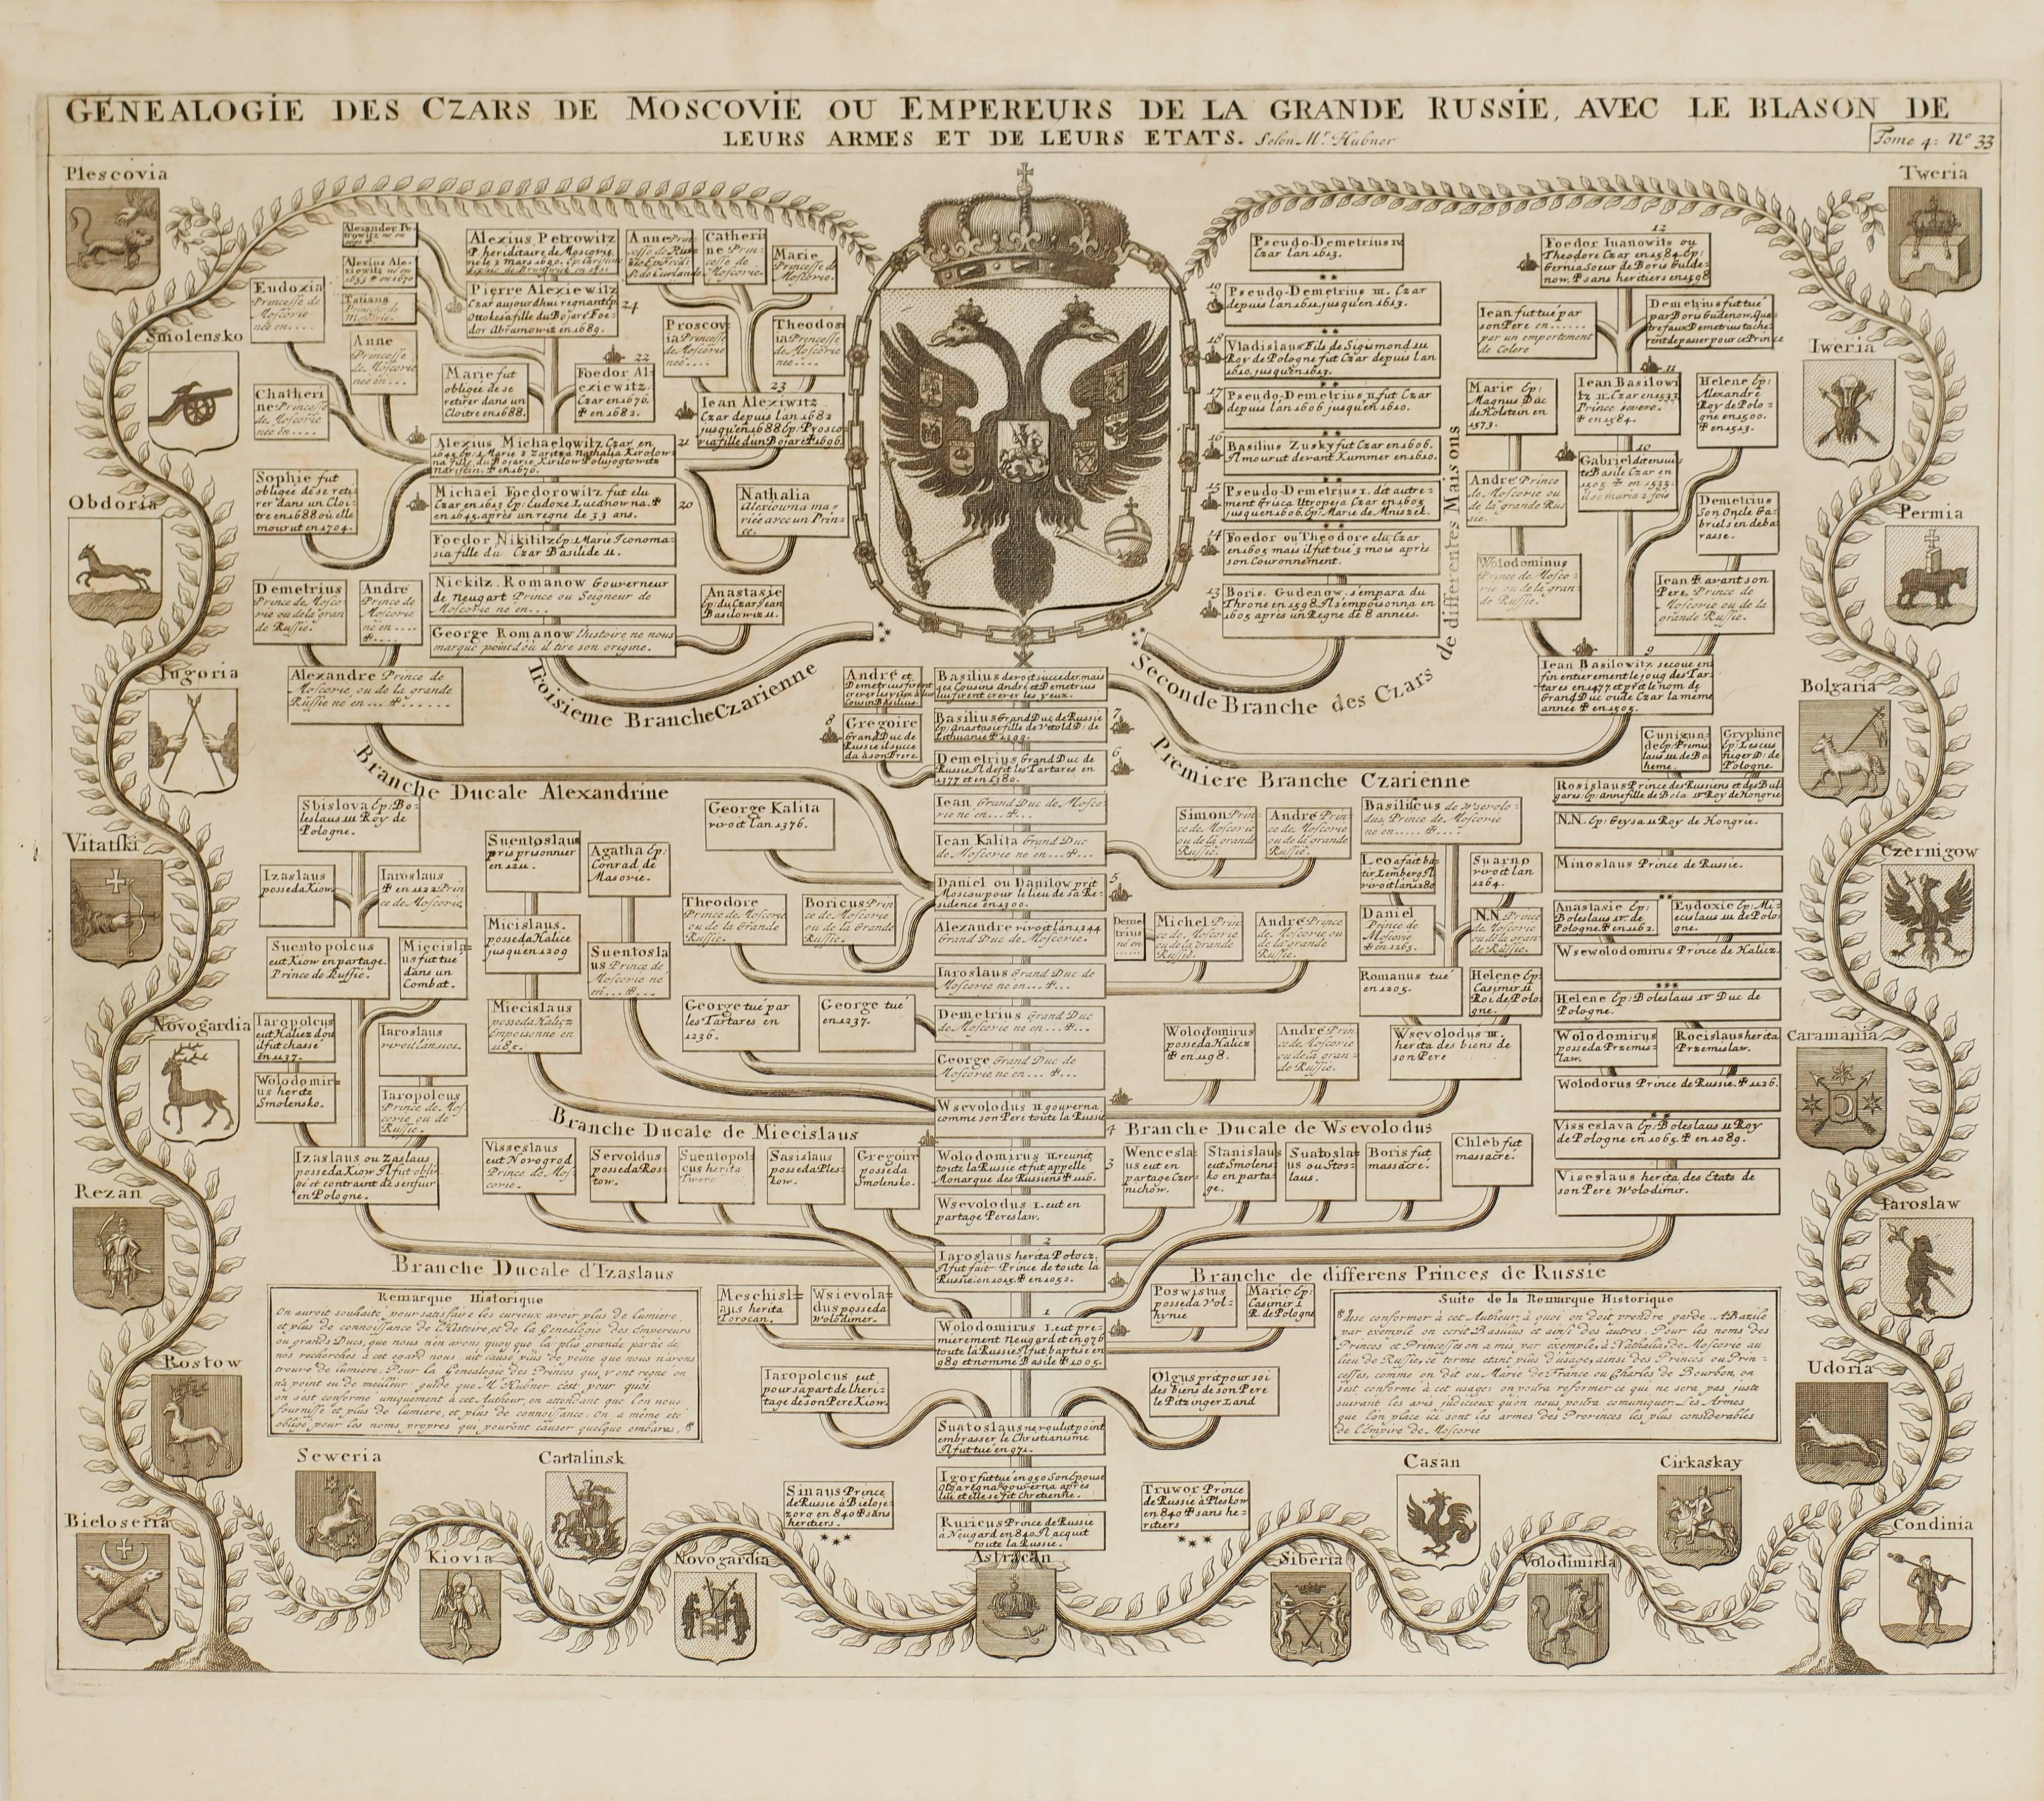 1715 Genealogie des Czars ou Empereurs de Moscovie de la Grande Russie - Print by Henri-Abraham Chatelain